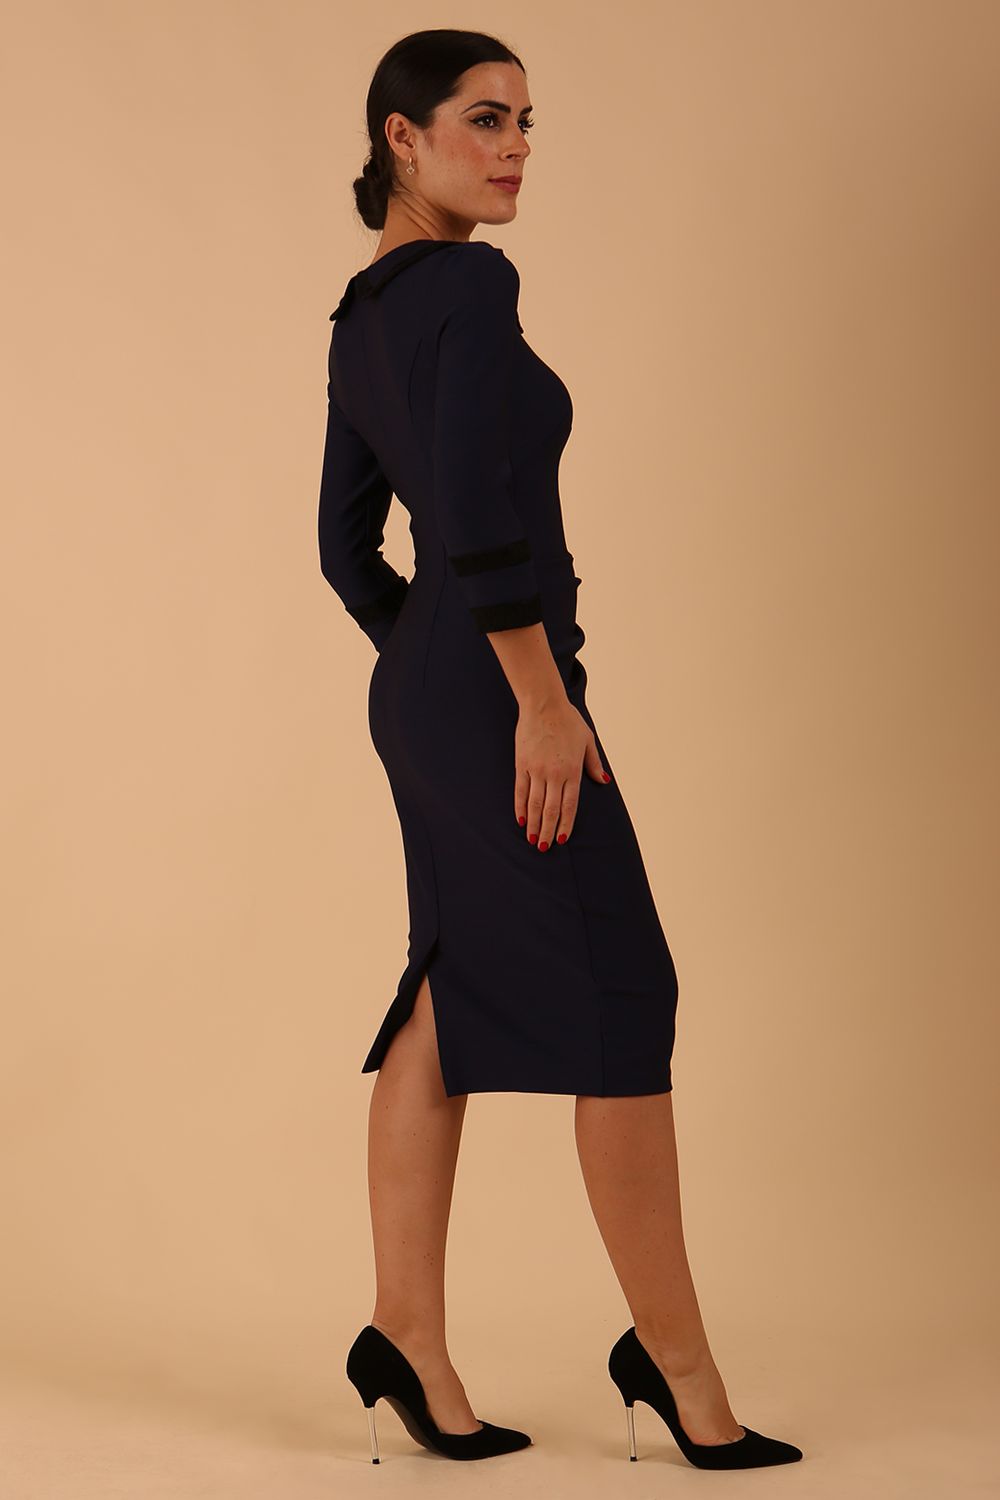 model wearing seed julia dress in navy blue colour